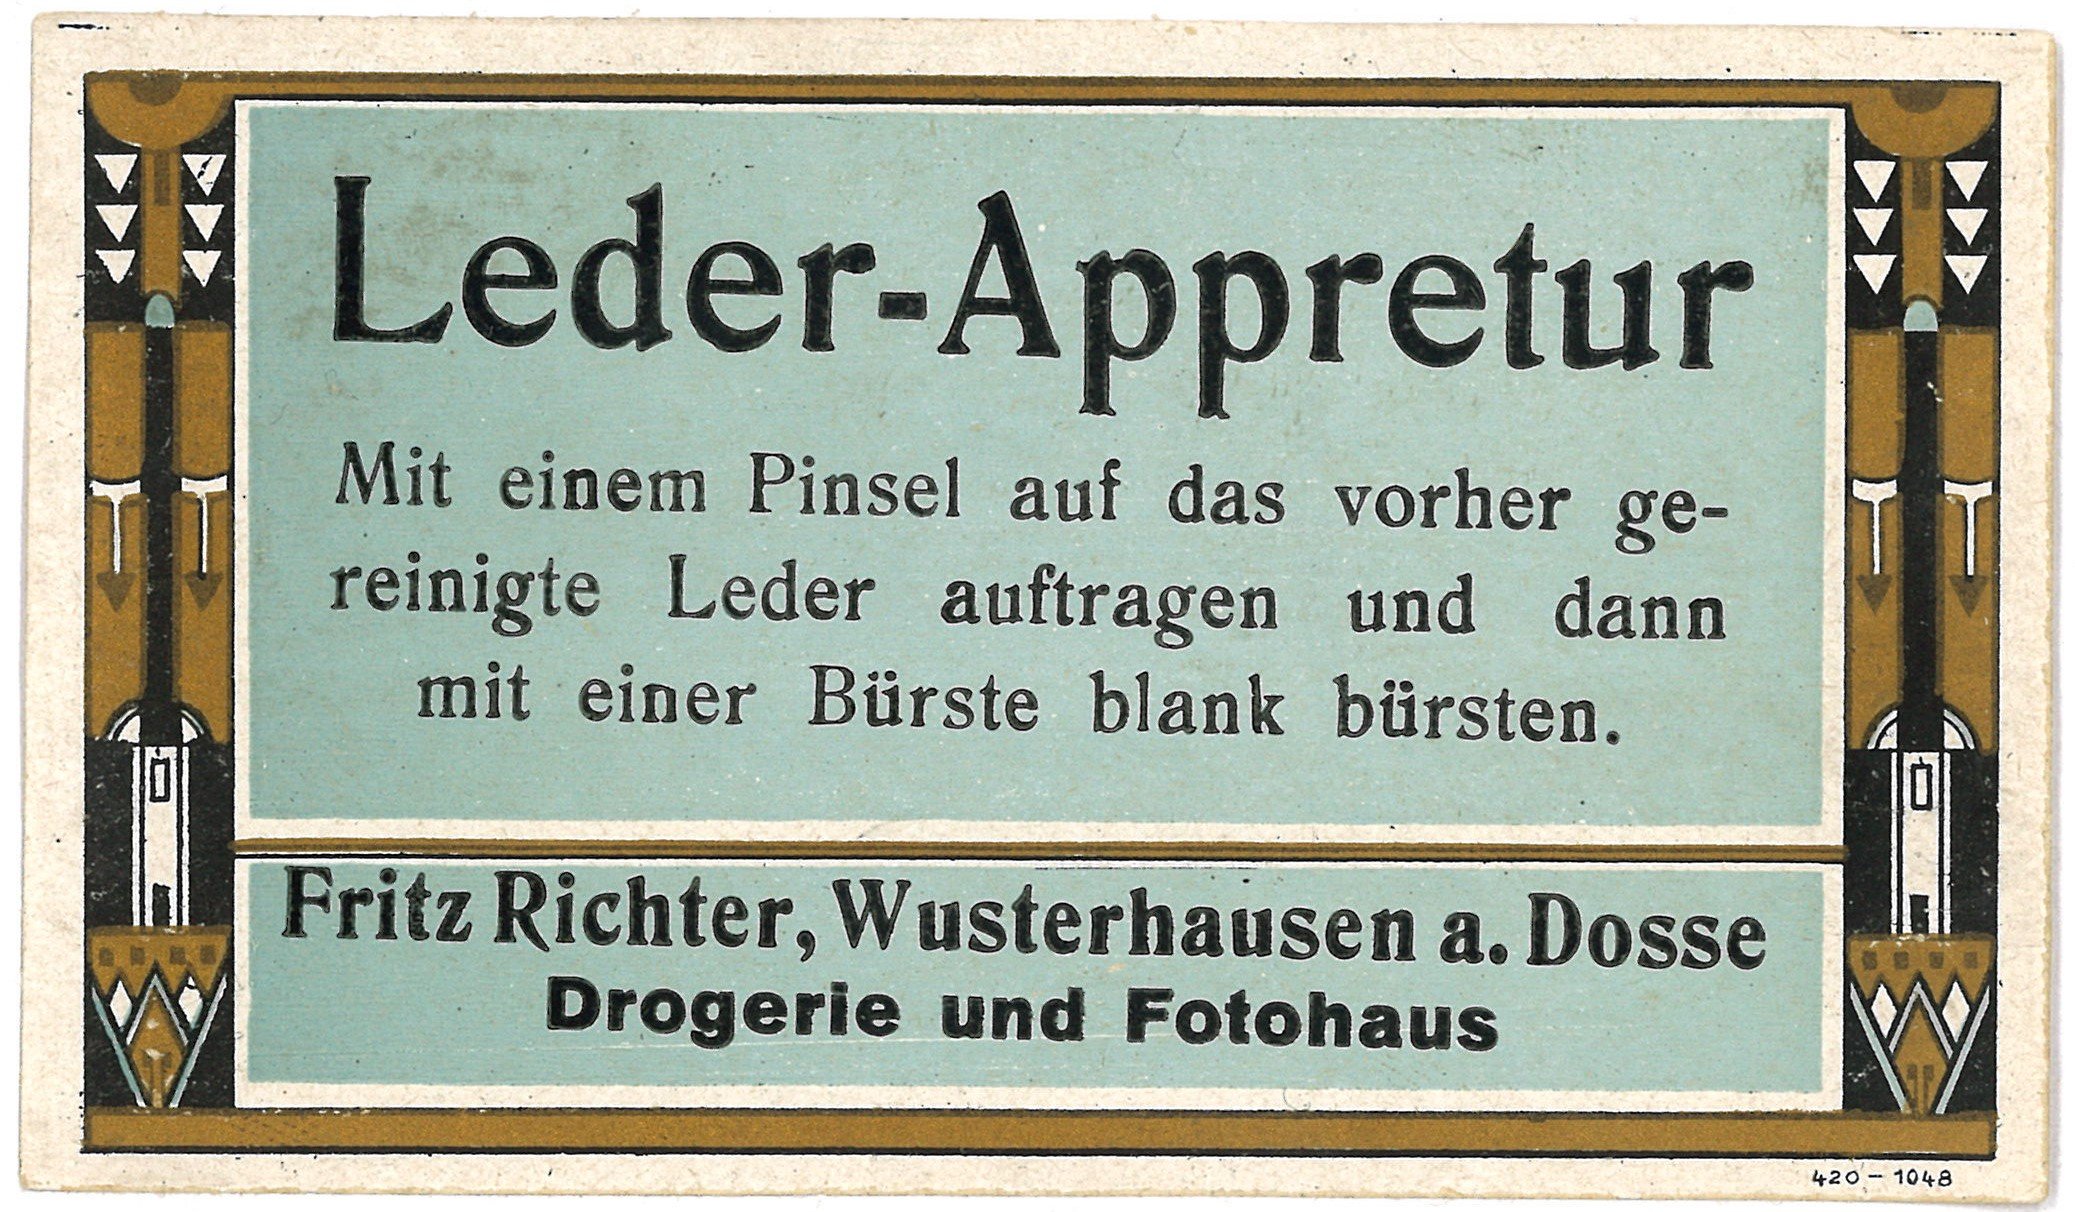 Wusterhausen/Dosse, Drogerie Fritz Richter: Leder-Appretur (Landesgeschichtliche Vereinigung für die Mark Brandenburg e.V., Archiv CC BY)